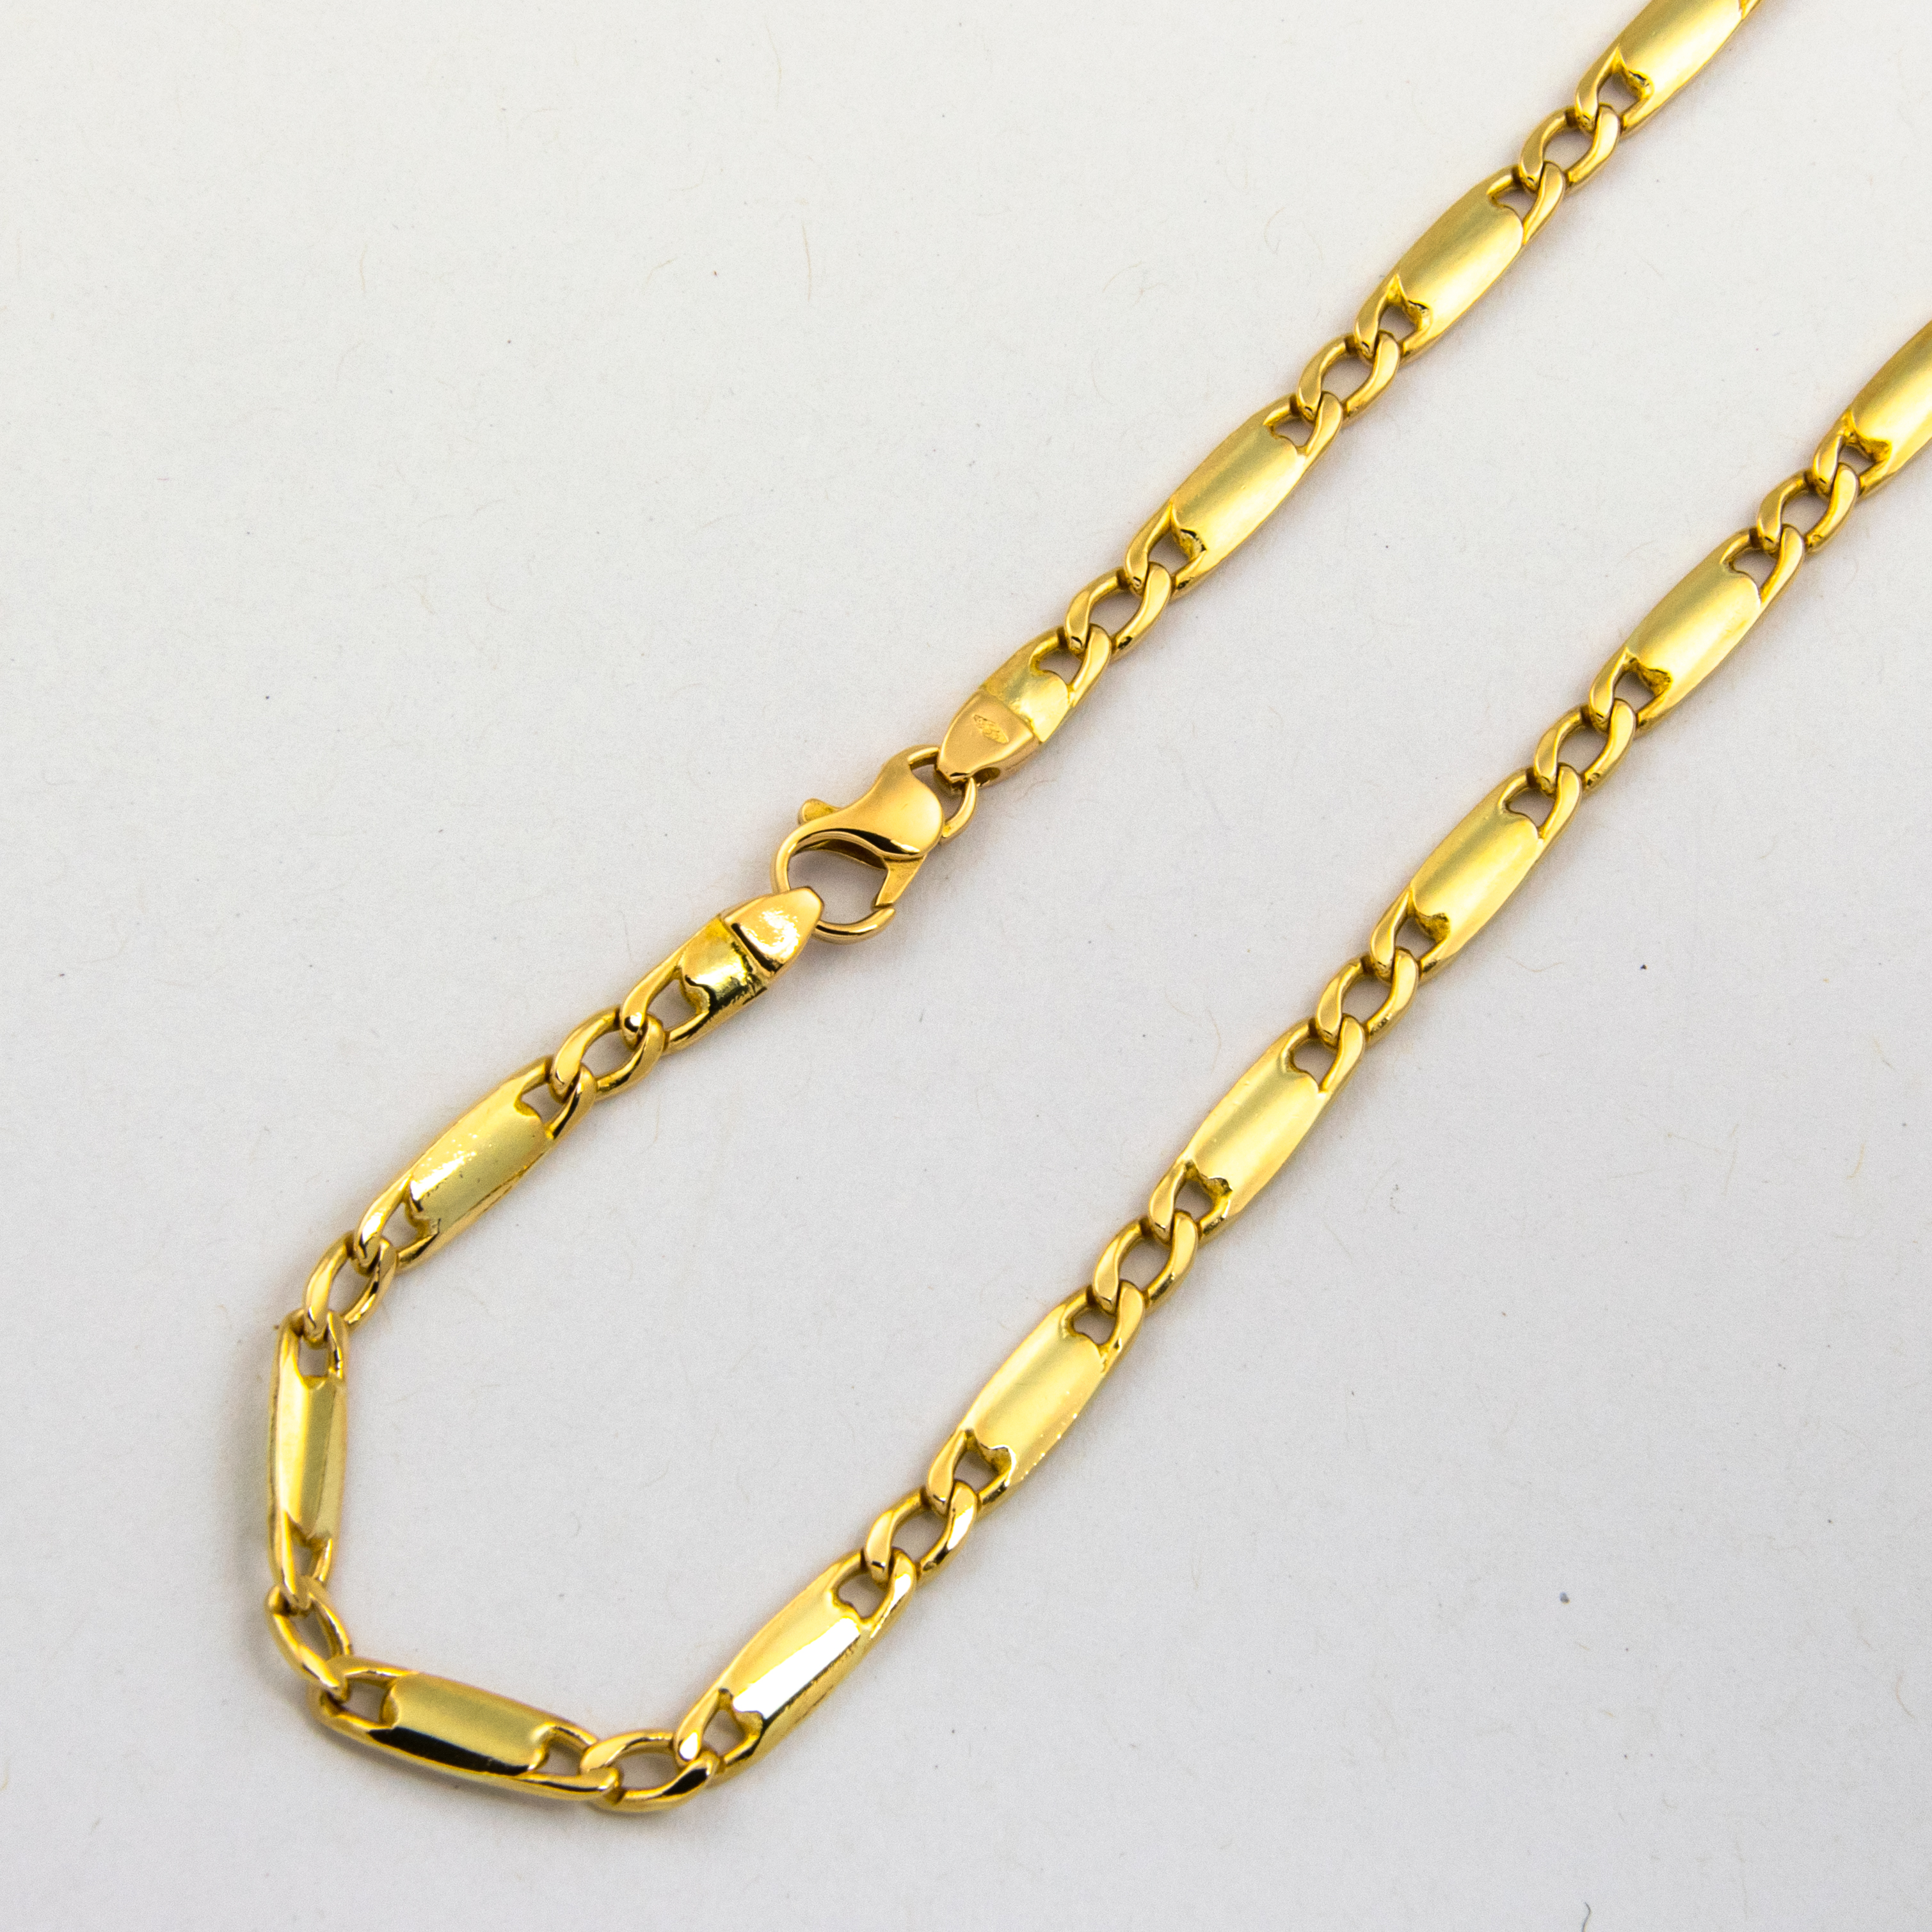 Halskette aus 585 Gelbgold, 52cm, nachhaltiger second hand Schmuck perfekt aufgearbeitet